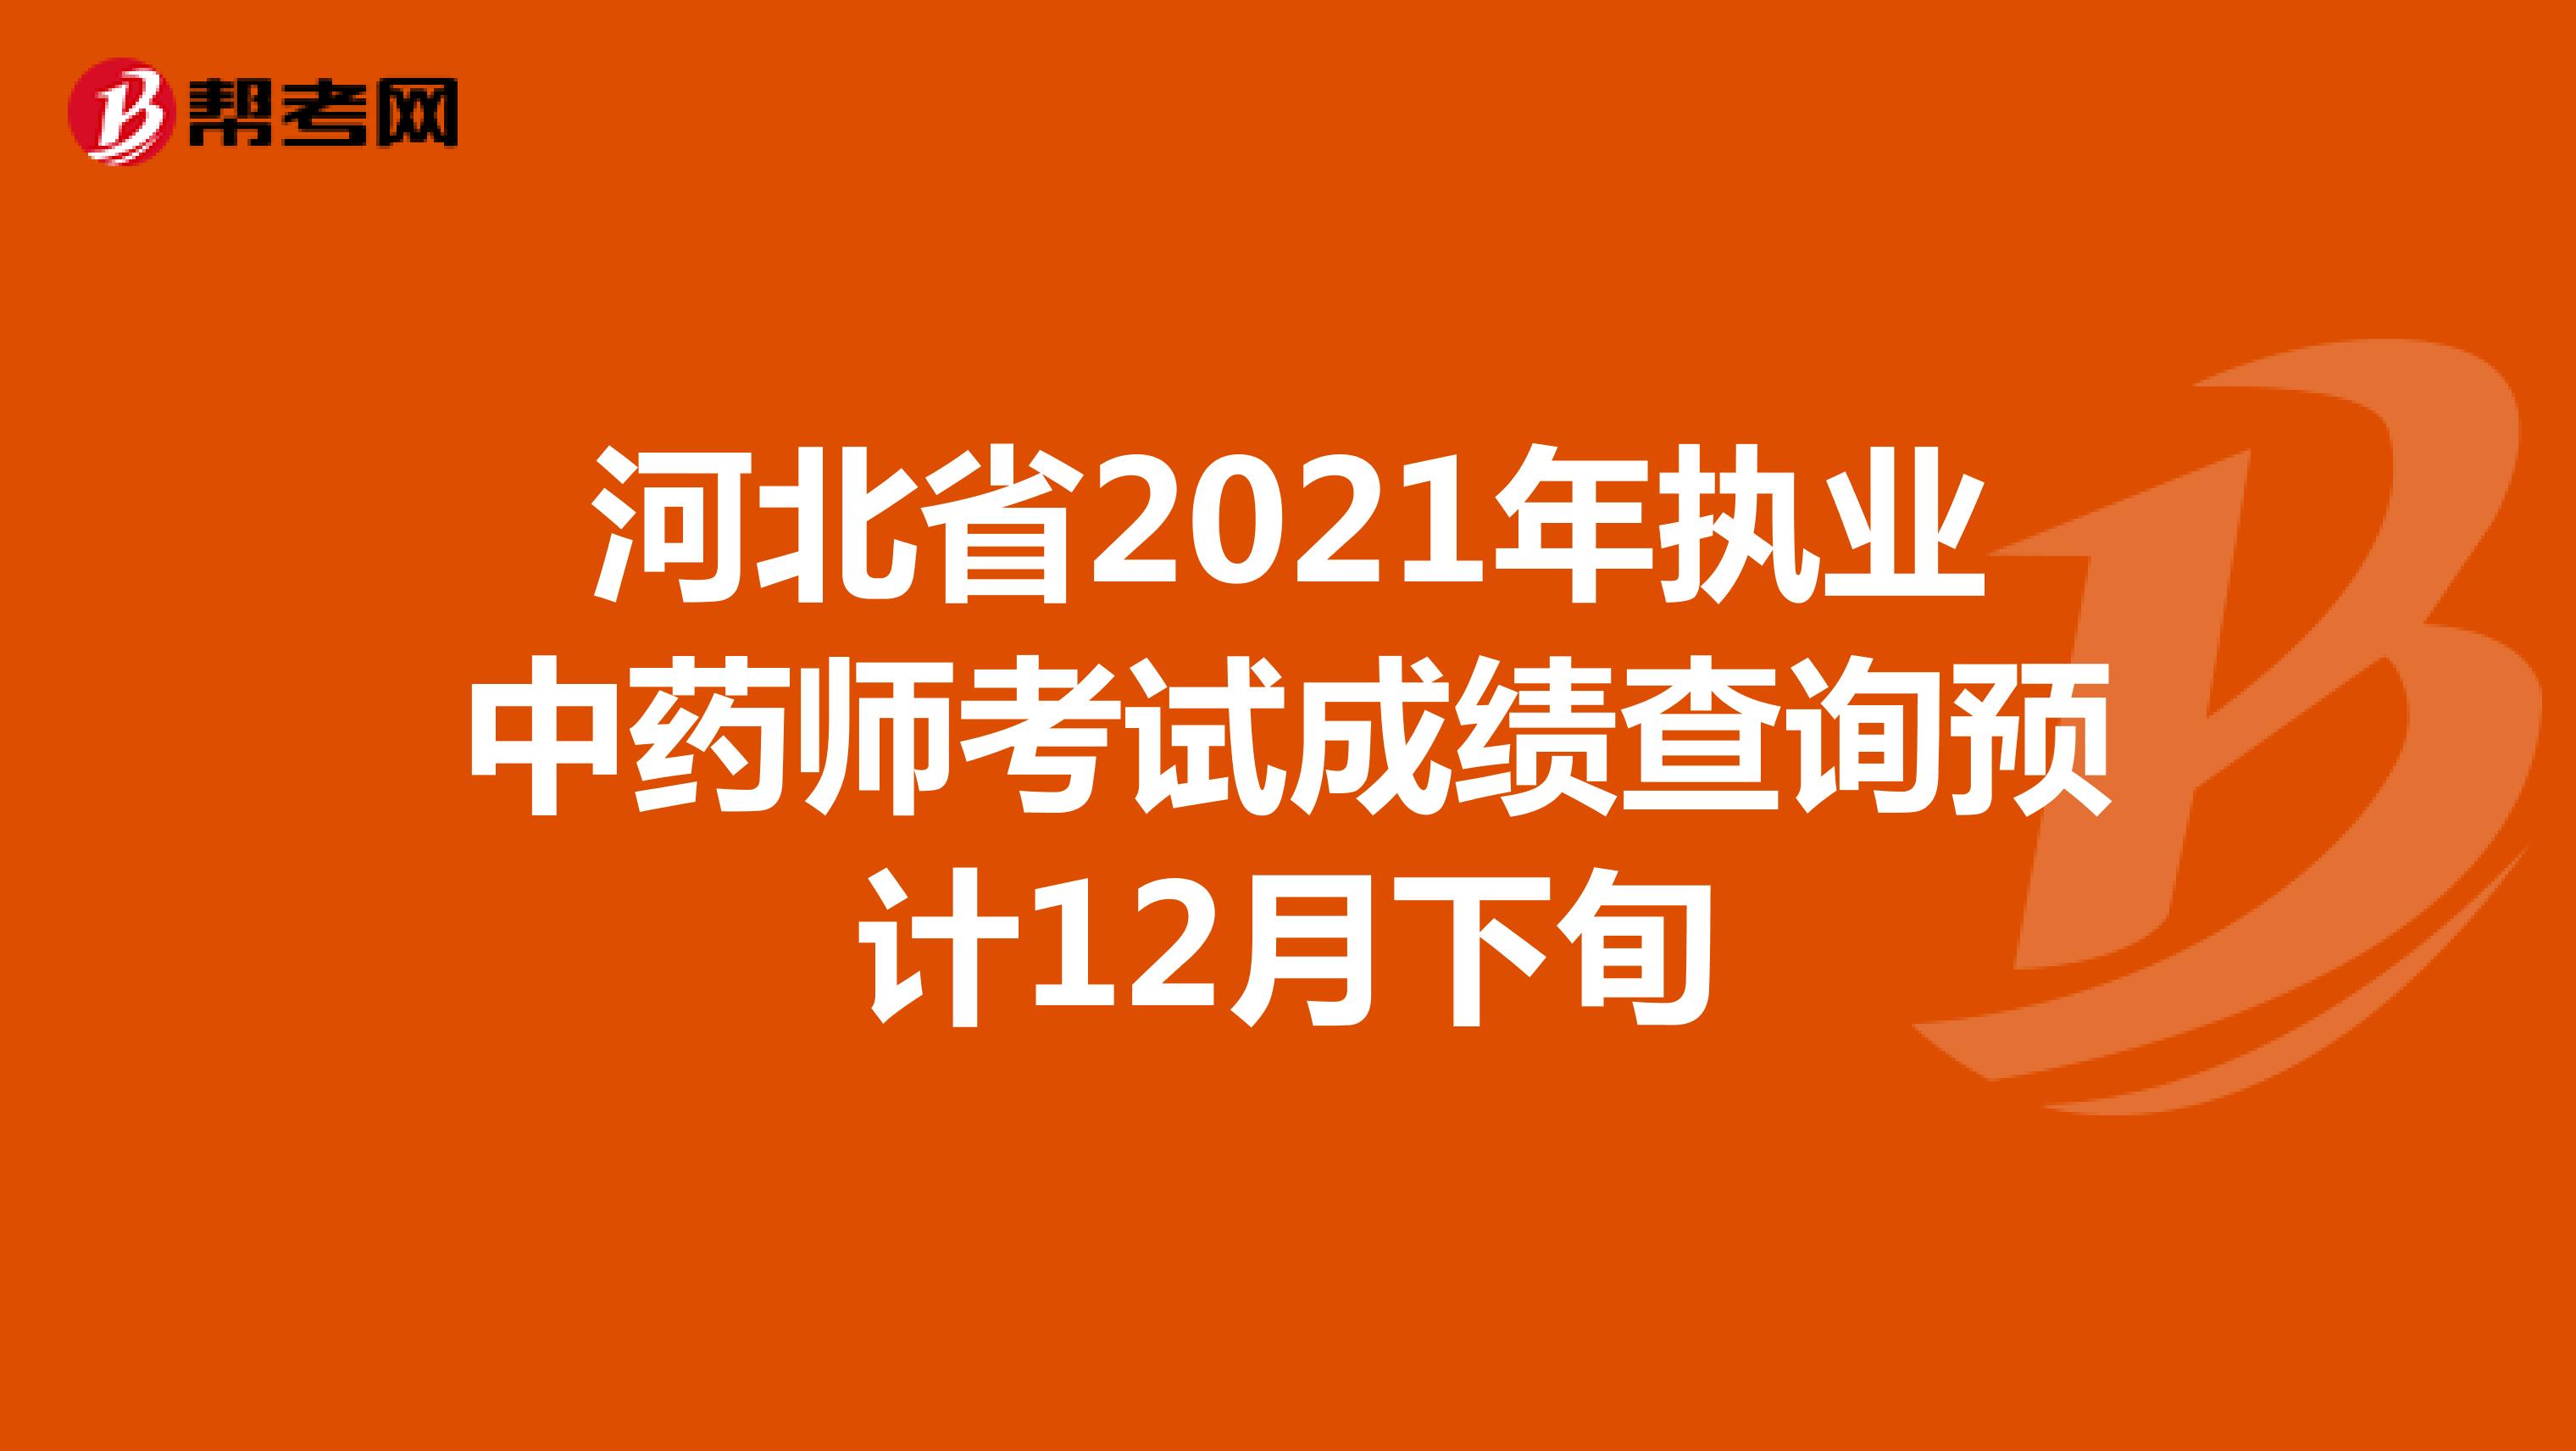 河北省2021年执业中药师考试成绩查询预计12月下旬